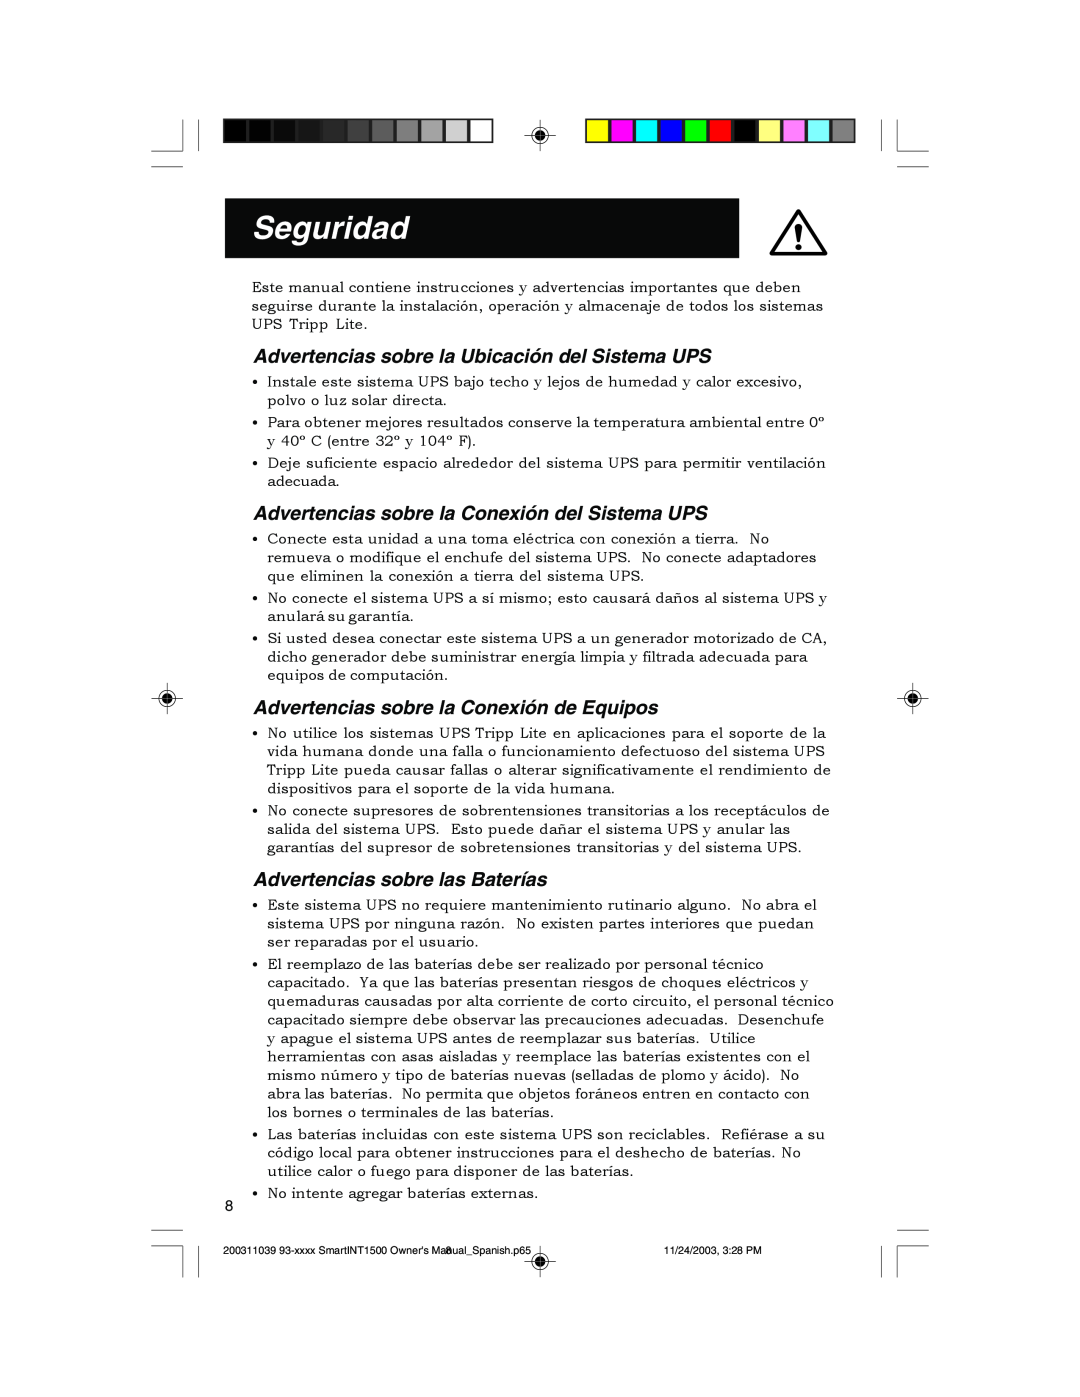 Tripp Lite 450-1500VA Seguridad, Advertencias sobre la Ubicación del Sistema UPS, Advertencias sobre las Baterías 